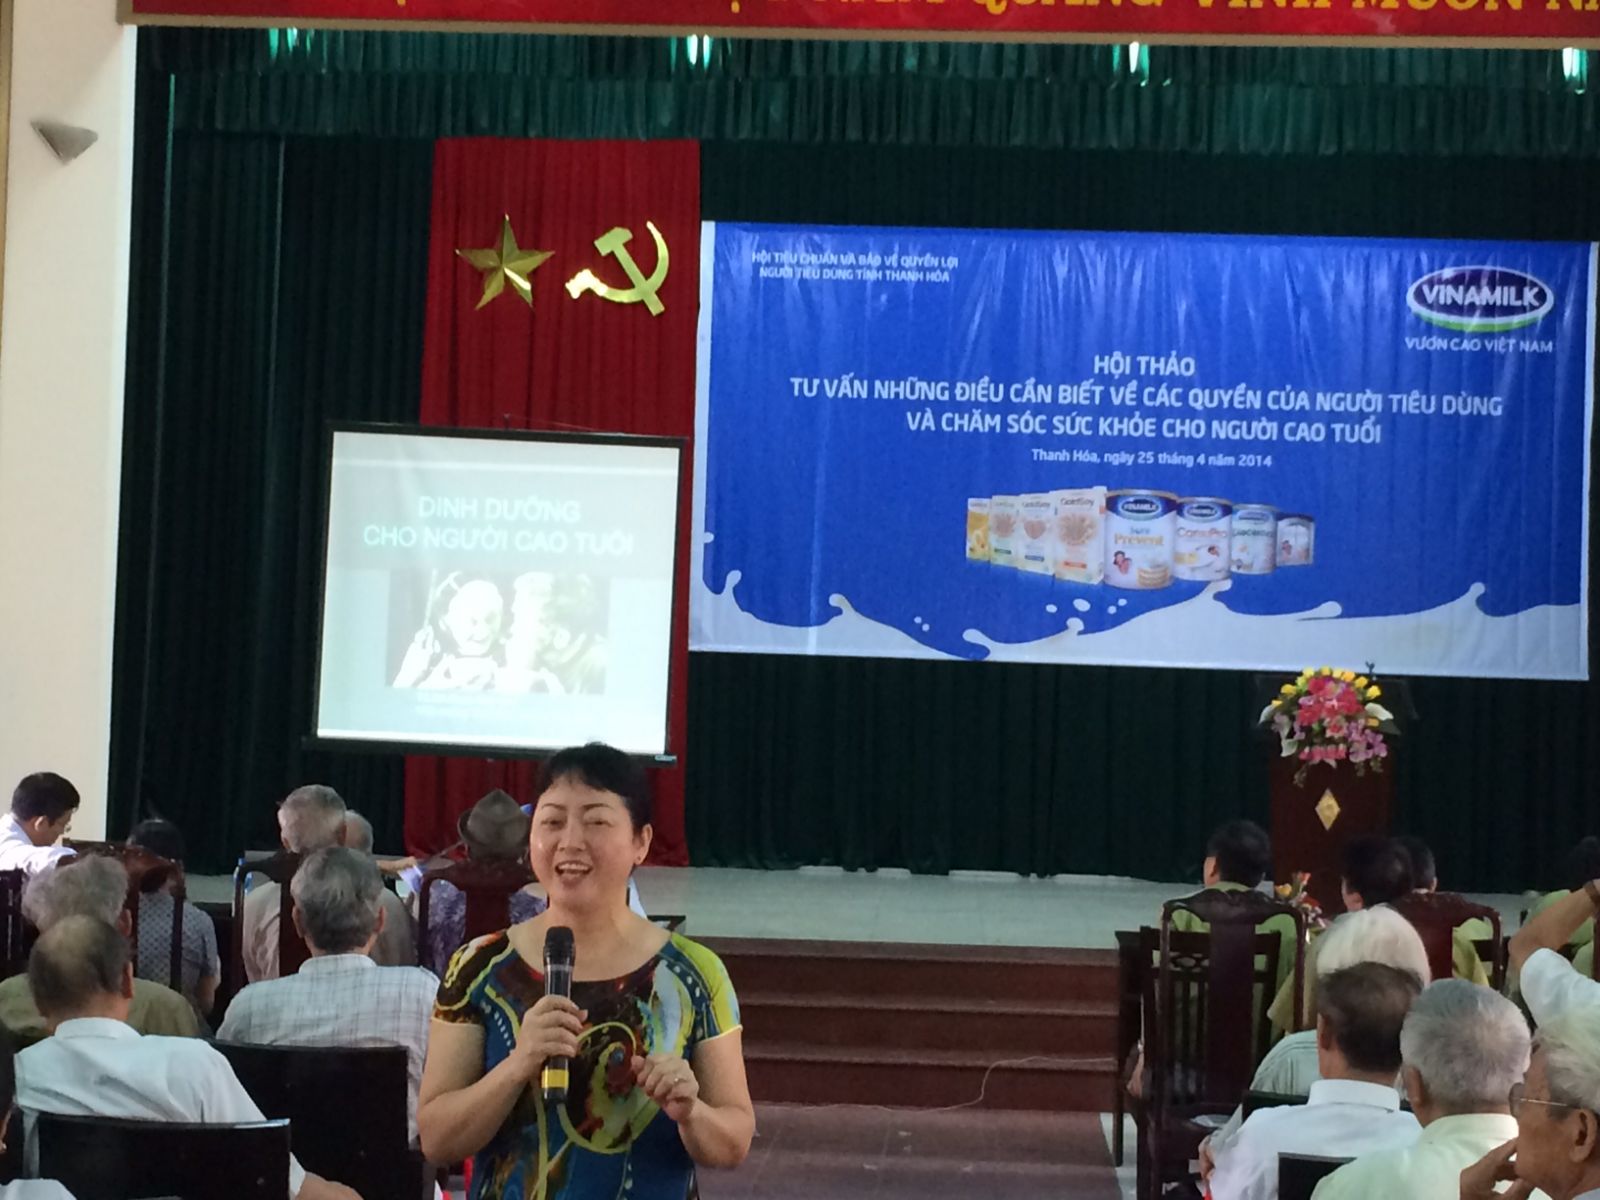 Bác sĩ Phạm Thúy Hòa – Viện trưởng Viện dinh dưỡng ứng dụng Việt Nam chia sẻ những thông tin hữu ích về dinh dưỡng cho người cao tuổi